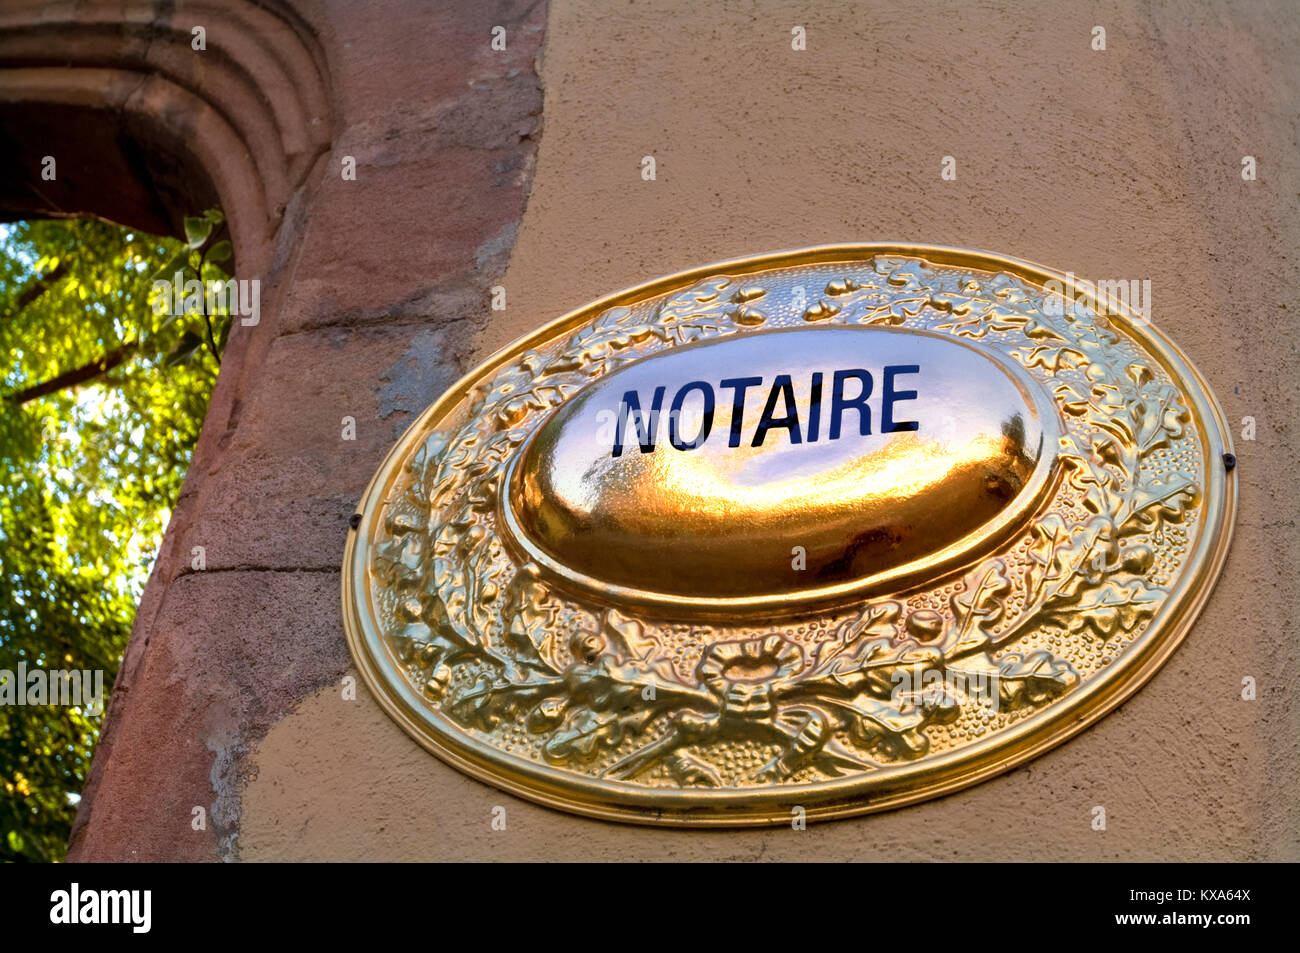 'Notaire' Notaire légaliser notarier bureau légal en France signe plaque en laiton, au coucher du soleil entrée imposante à l'office juridique Français France Banque D'Images